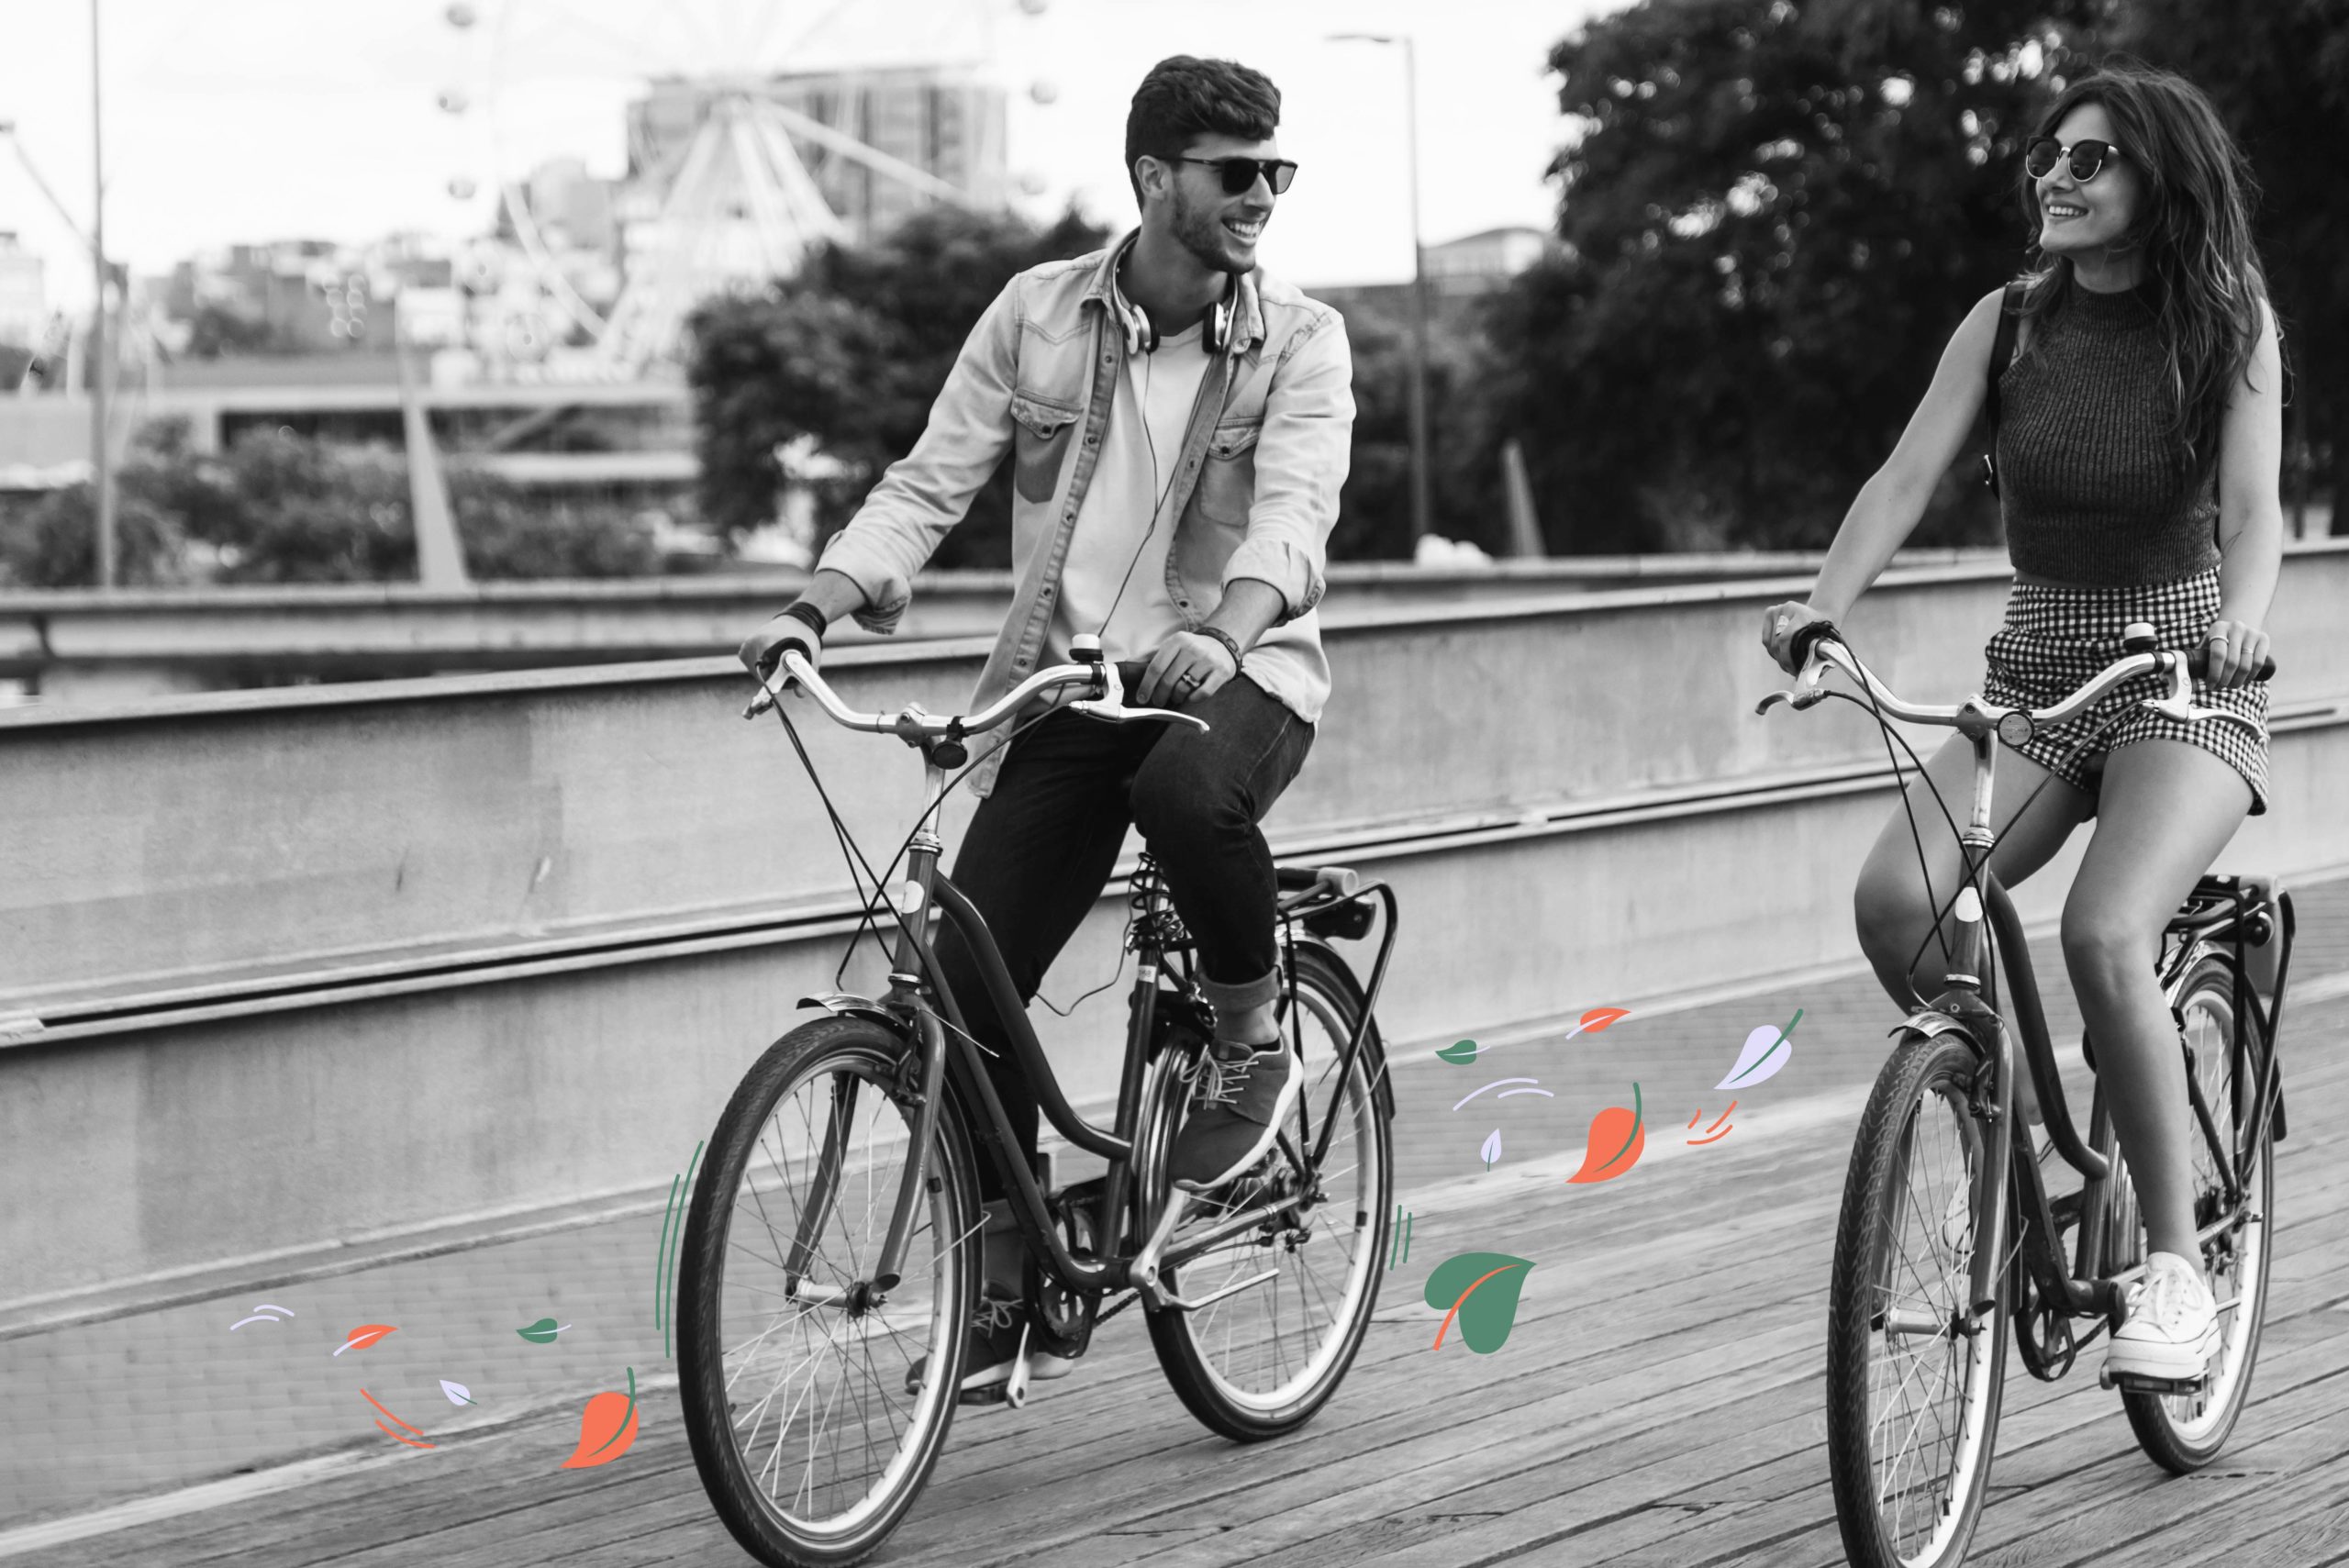 image en noir et blanc de deux jeune qui roulent en vélo et illustration en couleur de feuille qui s'échappent des roues de l'un d'eux